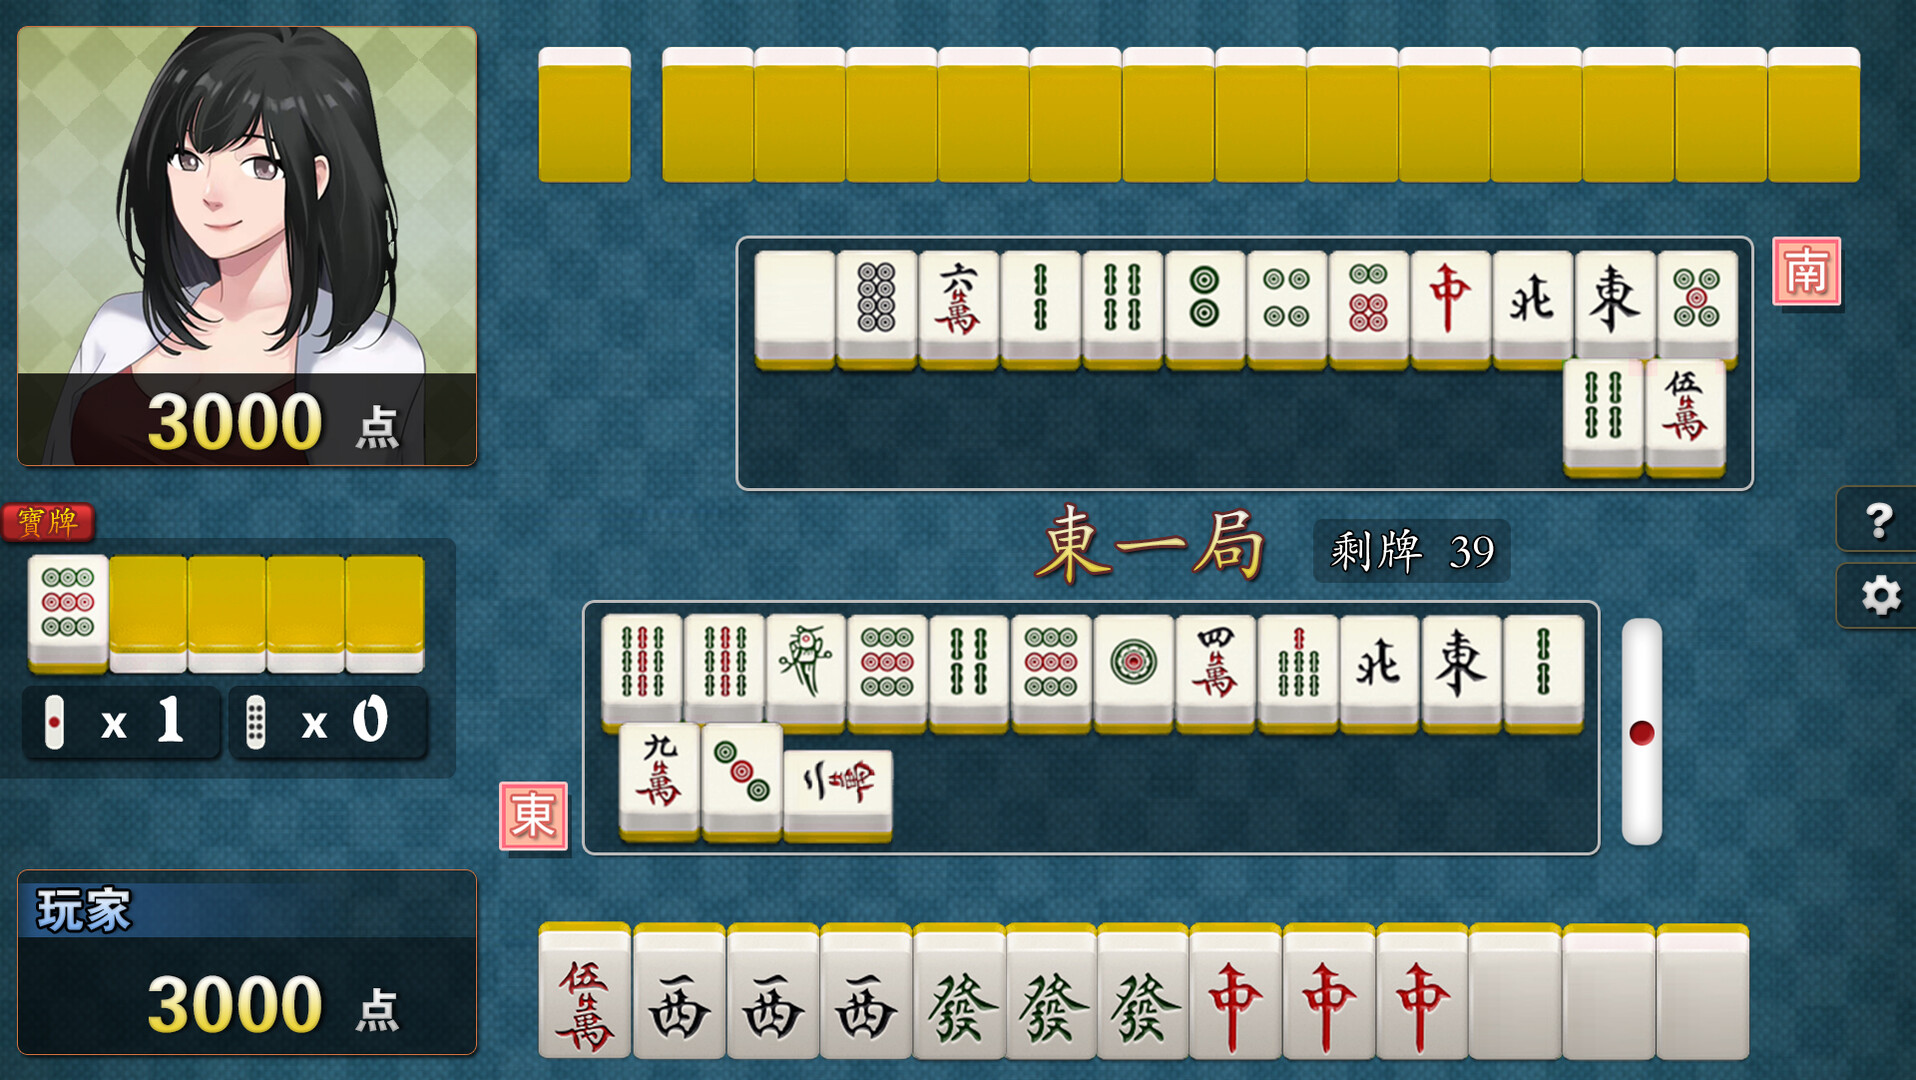 《勾八麻将J8 Mahjong》V1.2.0HF-PC-百度网盘资源